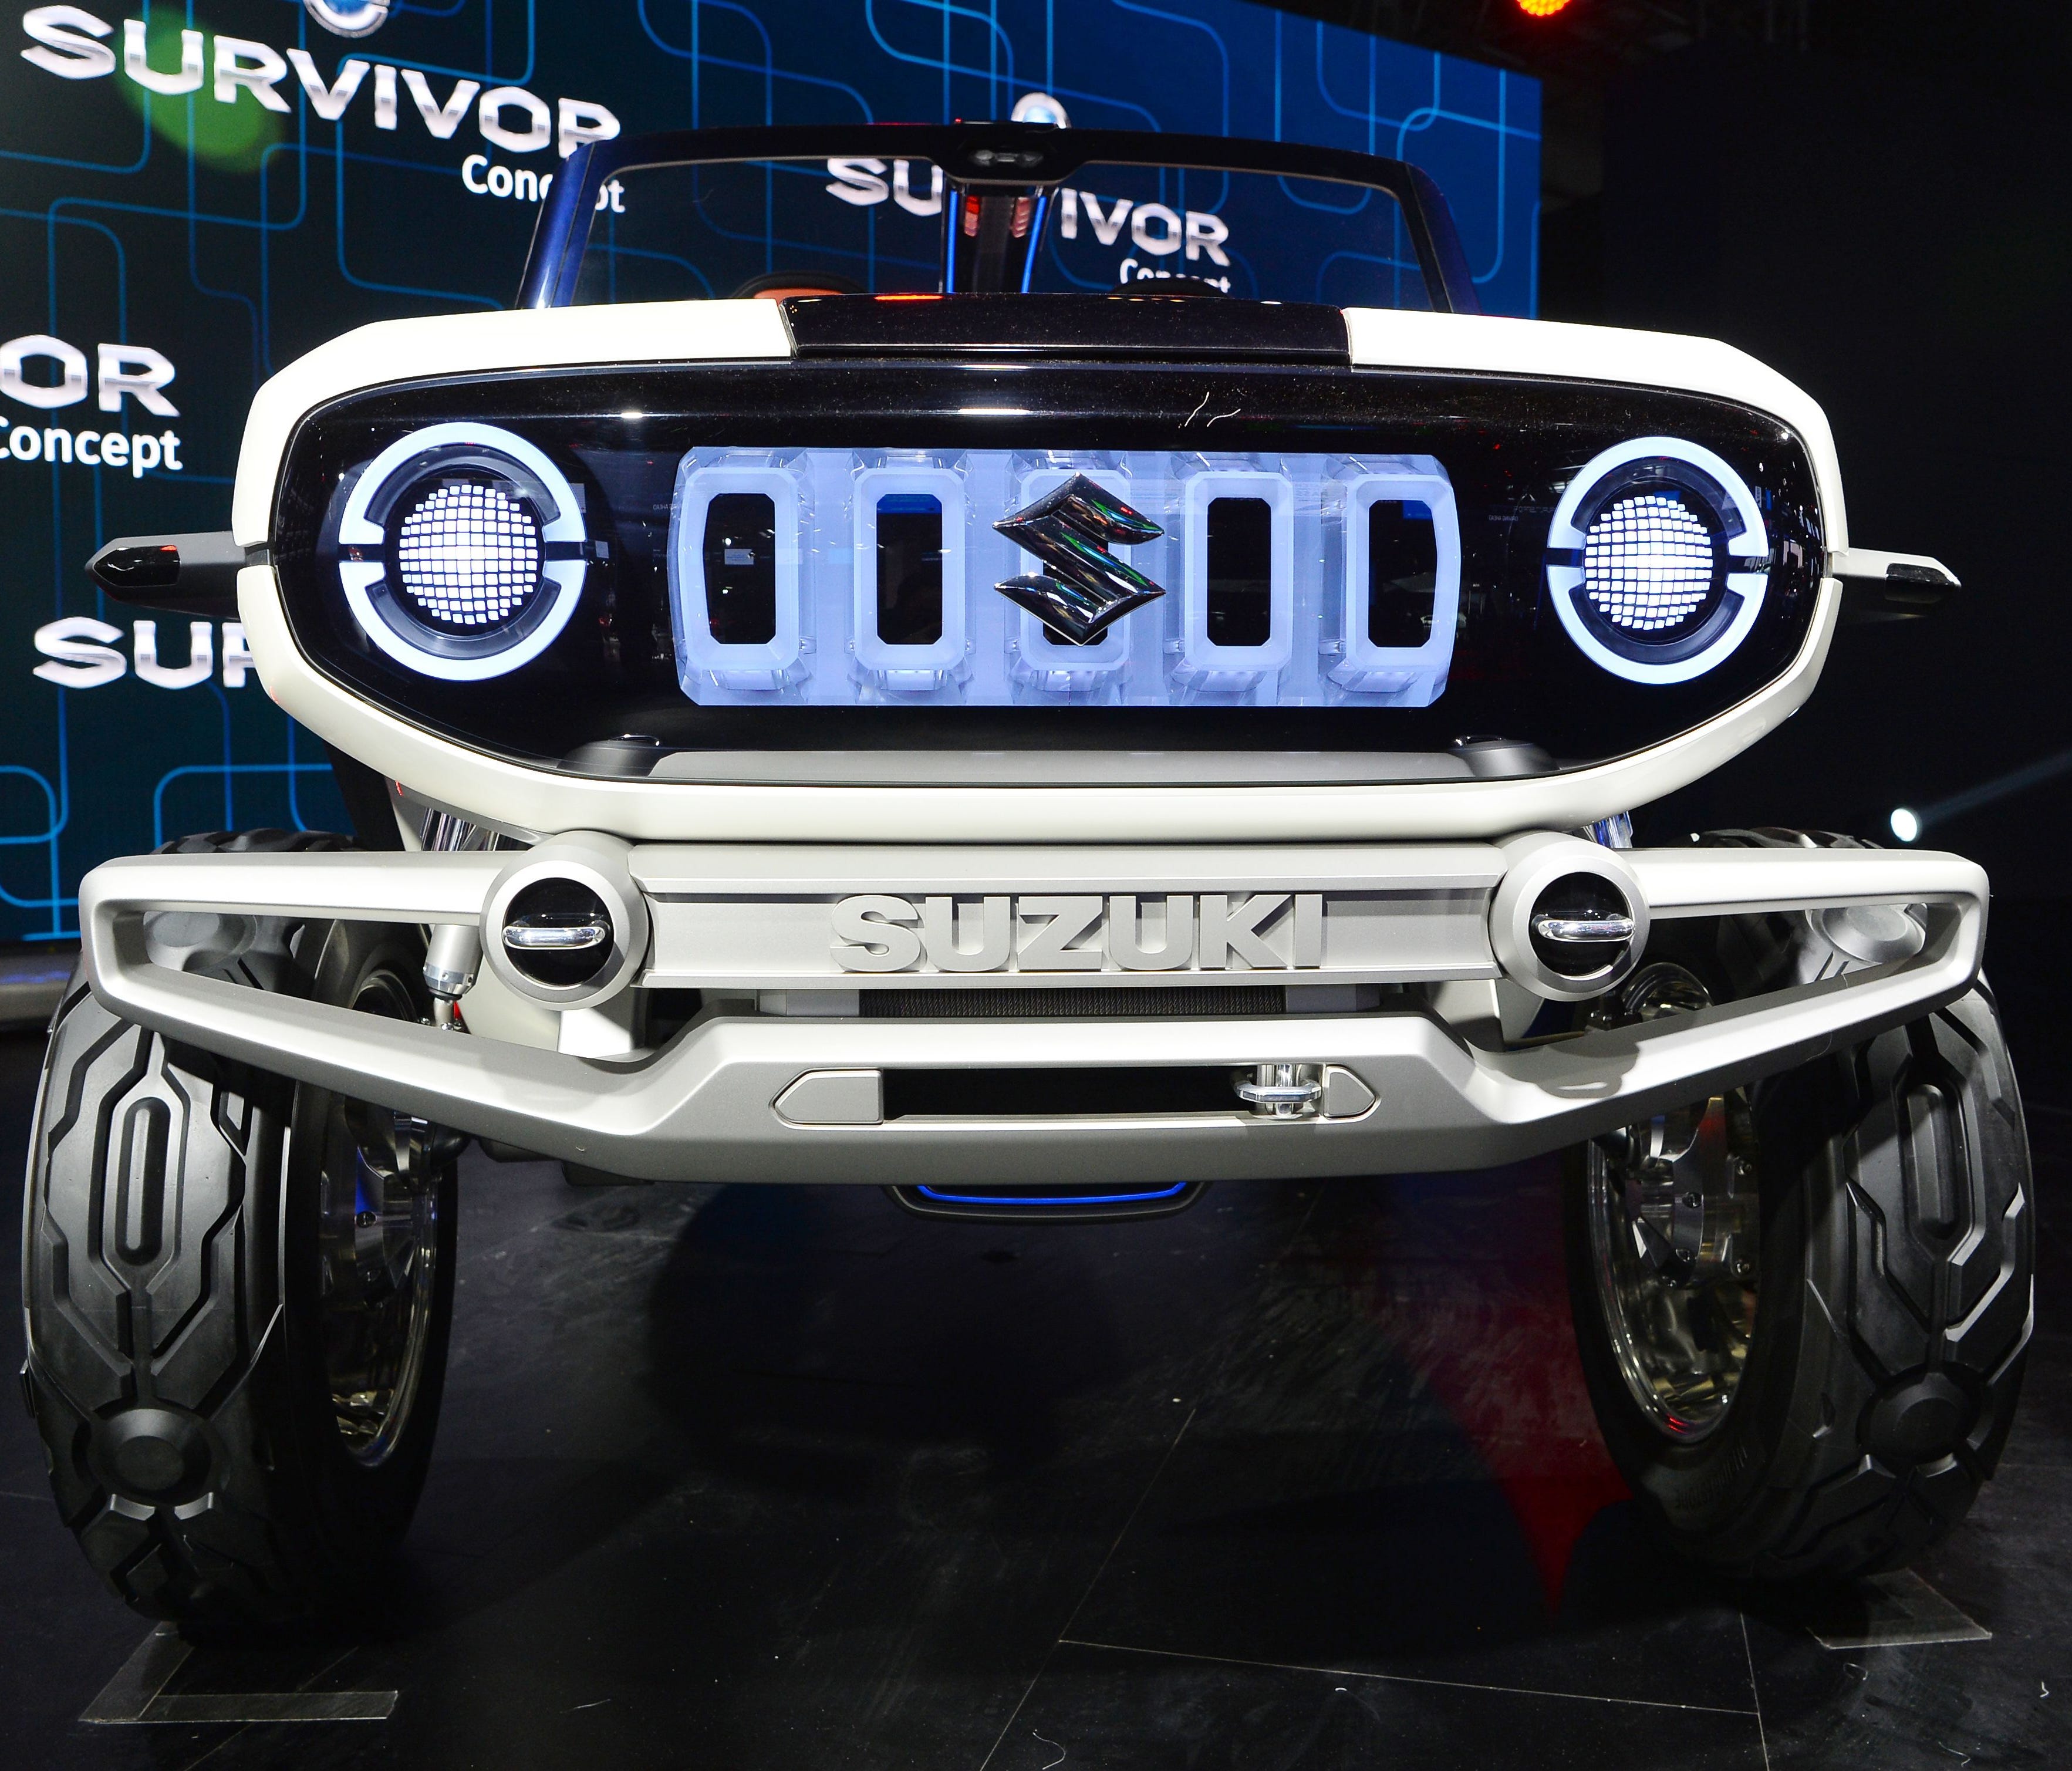 A Maruti Suzuki electric e-Survivor concept car during the Indian Auto Expo 2018 in Greater Noida.